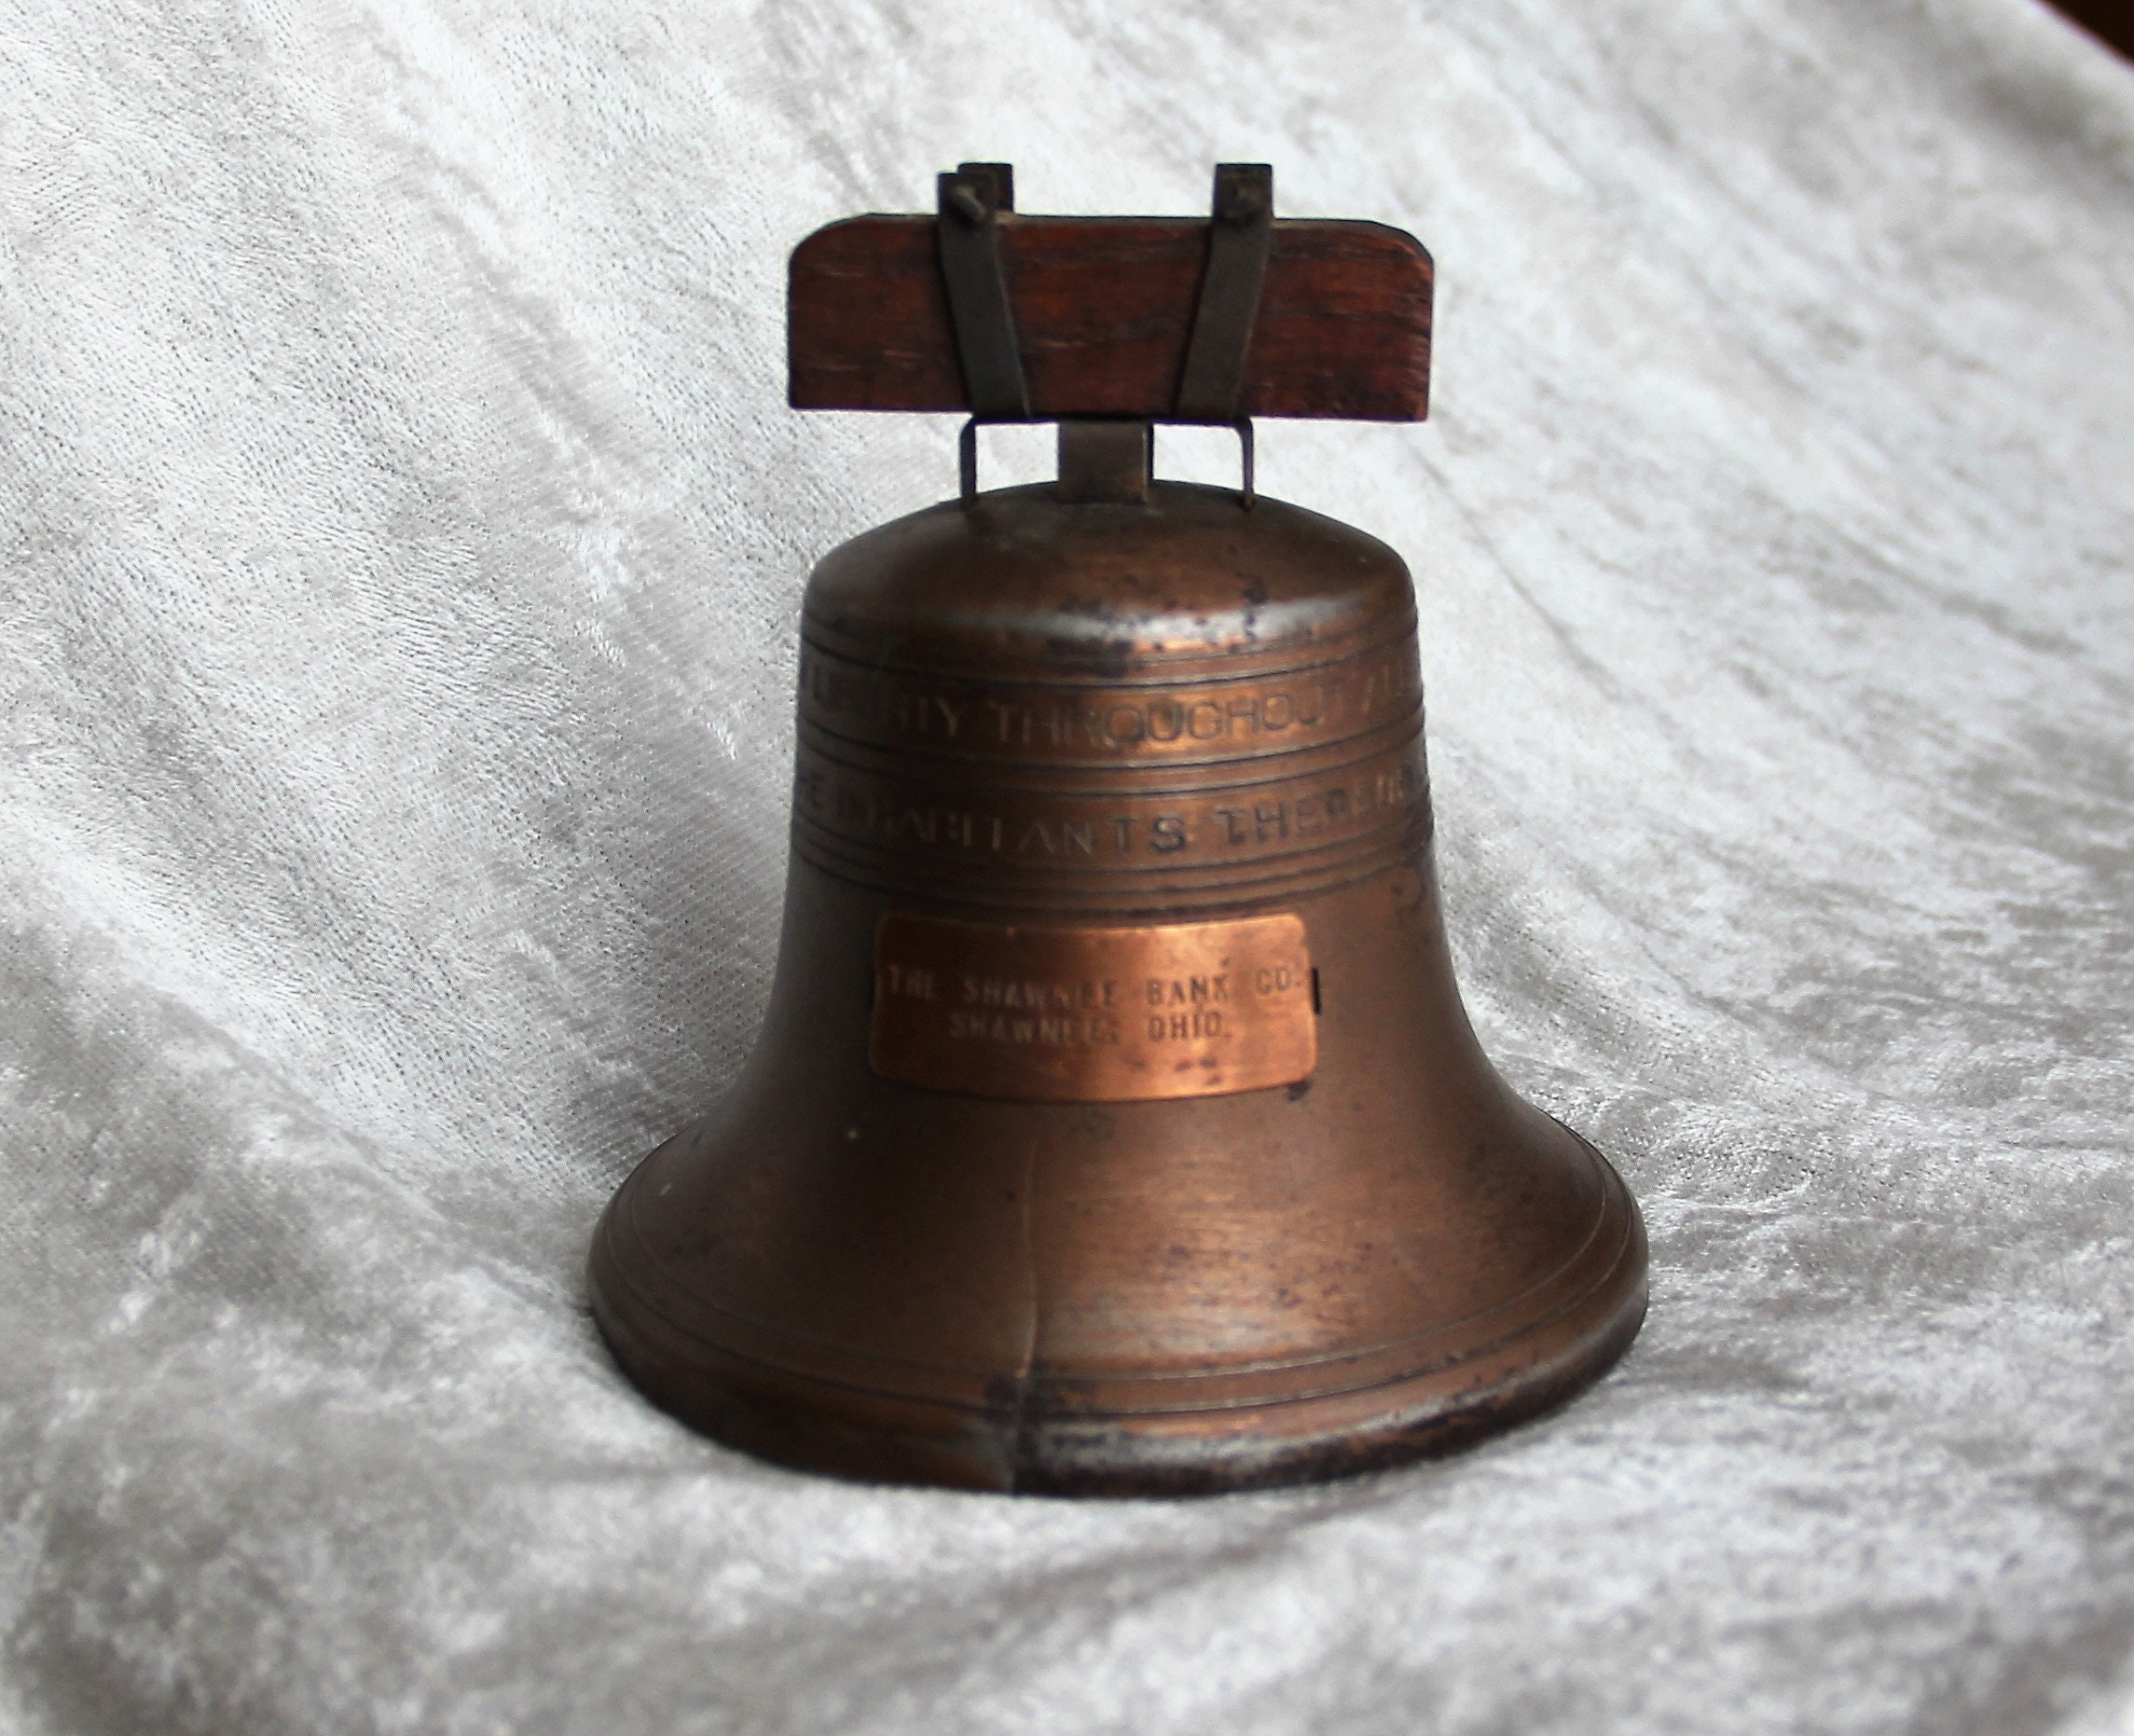 Liberty Bells .375 12/Pkg-Gold 